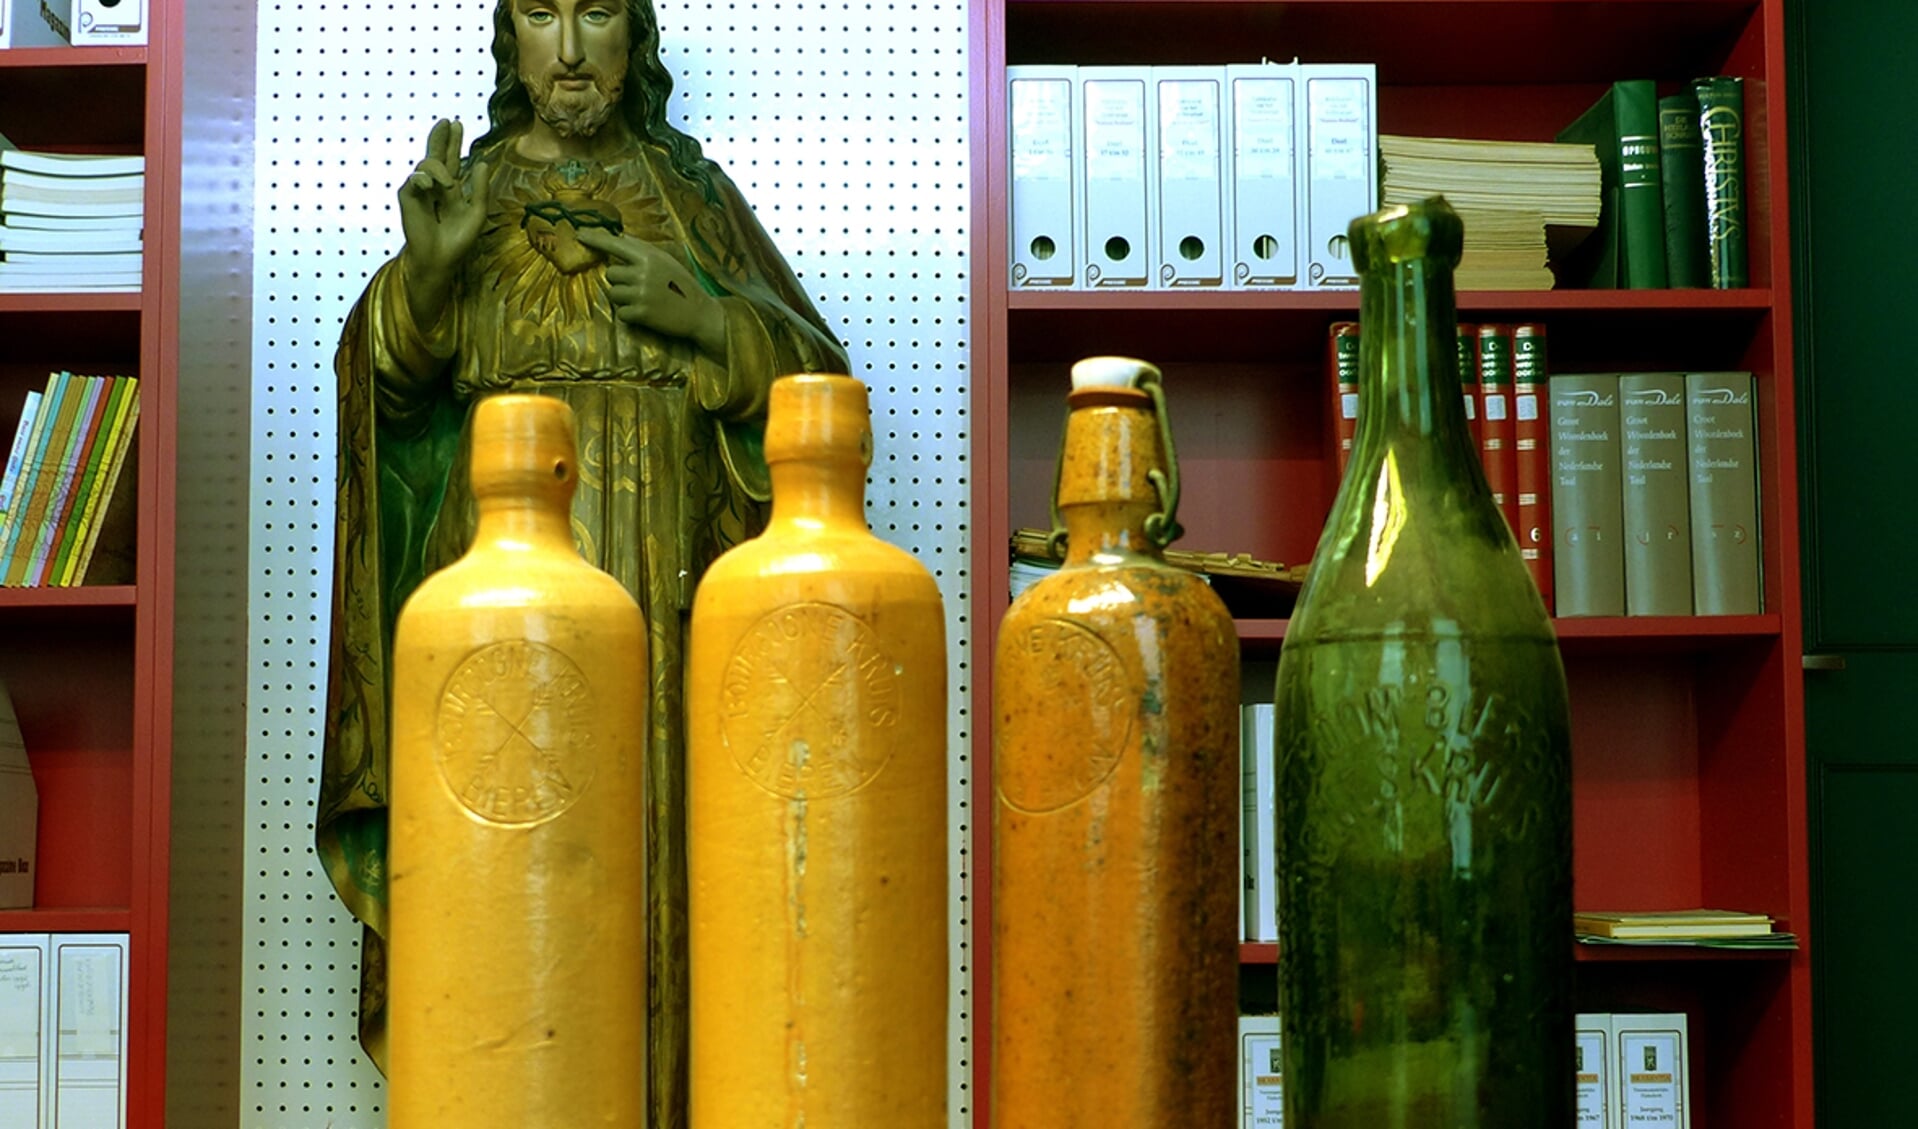 Drie kruiken en één fles herinneren aan de brouwers van de familie Mastboom. FOTO KEES RADEMAKERS